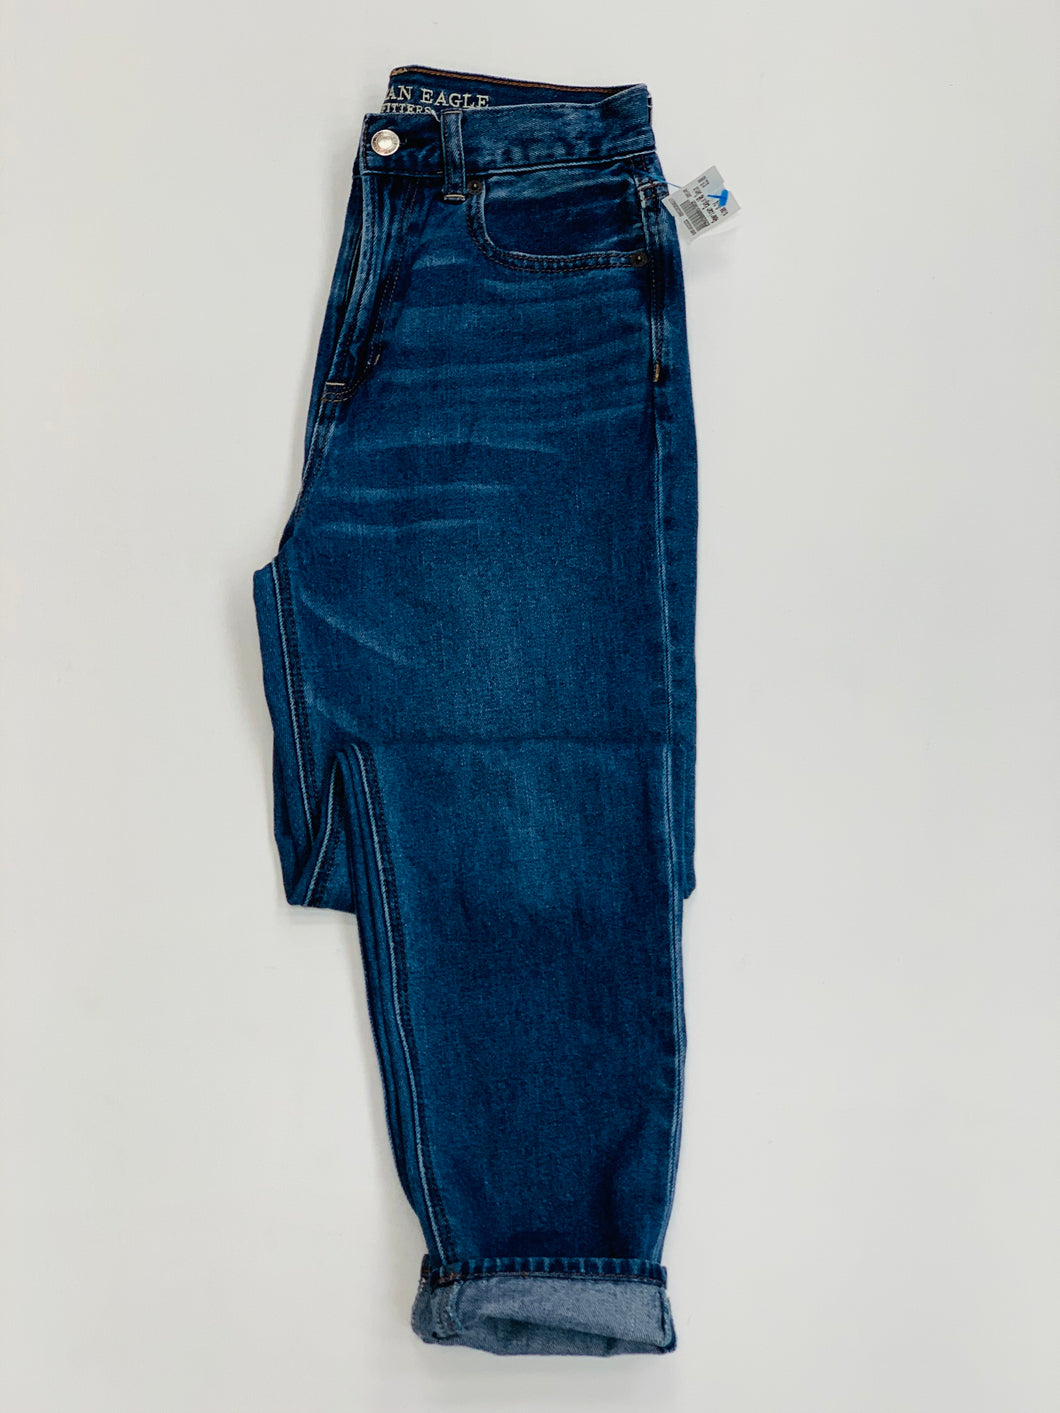 American Eagle Mom Jeans Size 0 (24)-B15D982B-E8CB-4583-A92D-9668B4744464.jpeg